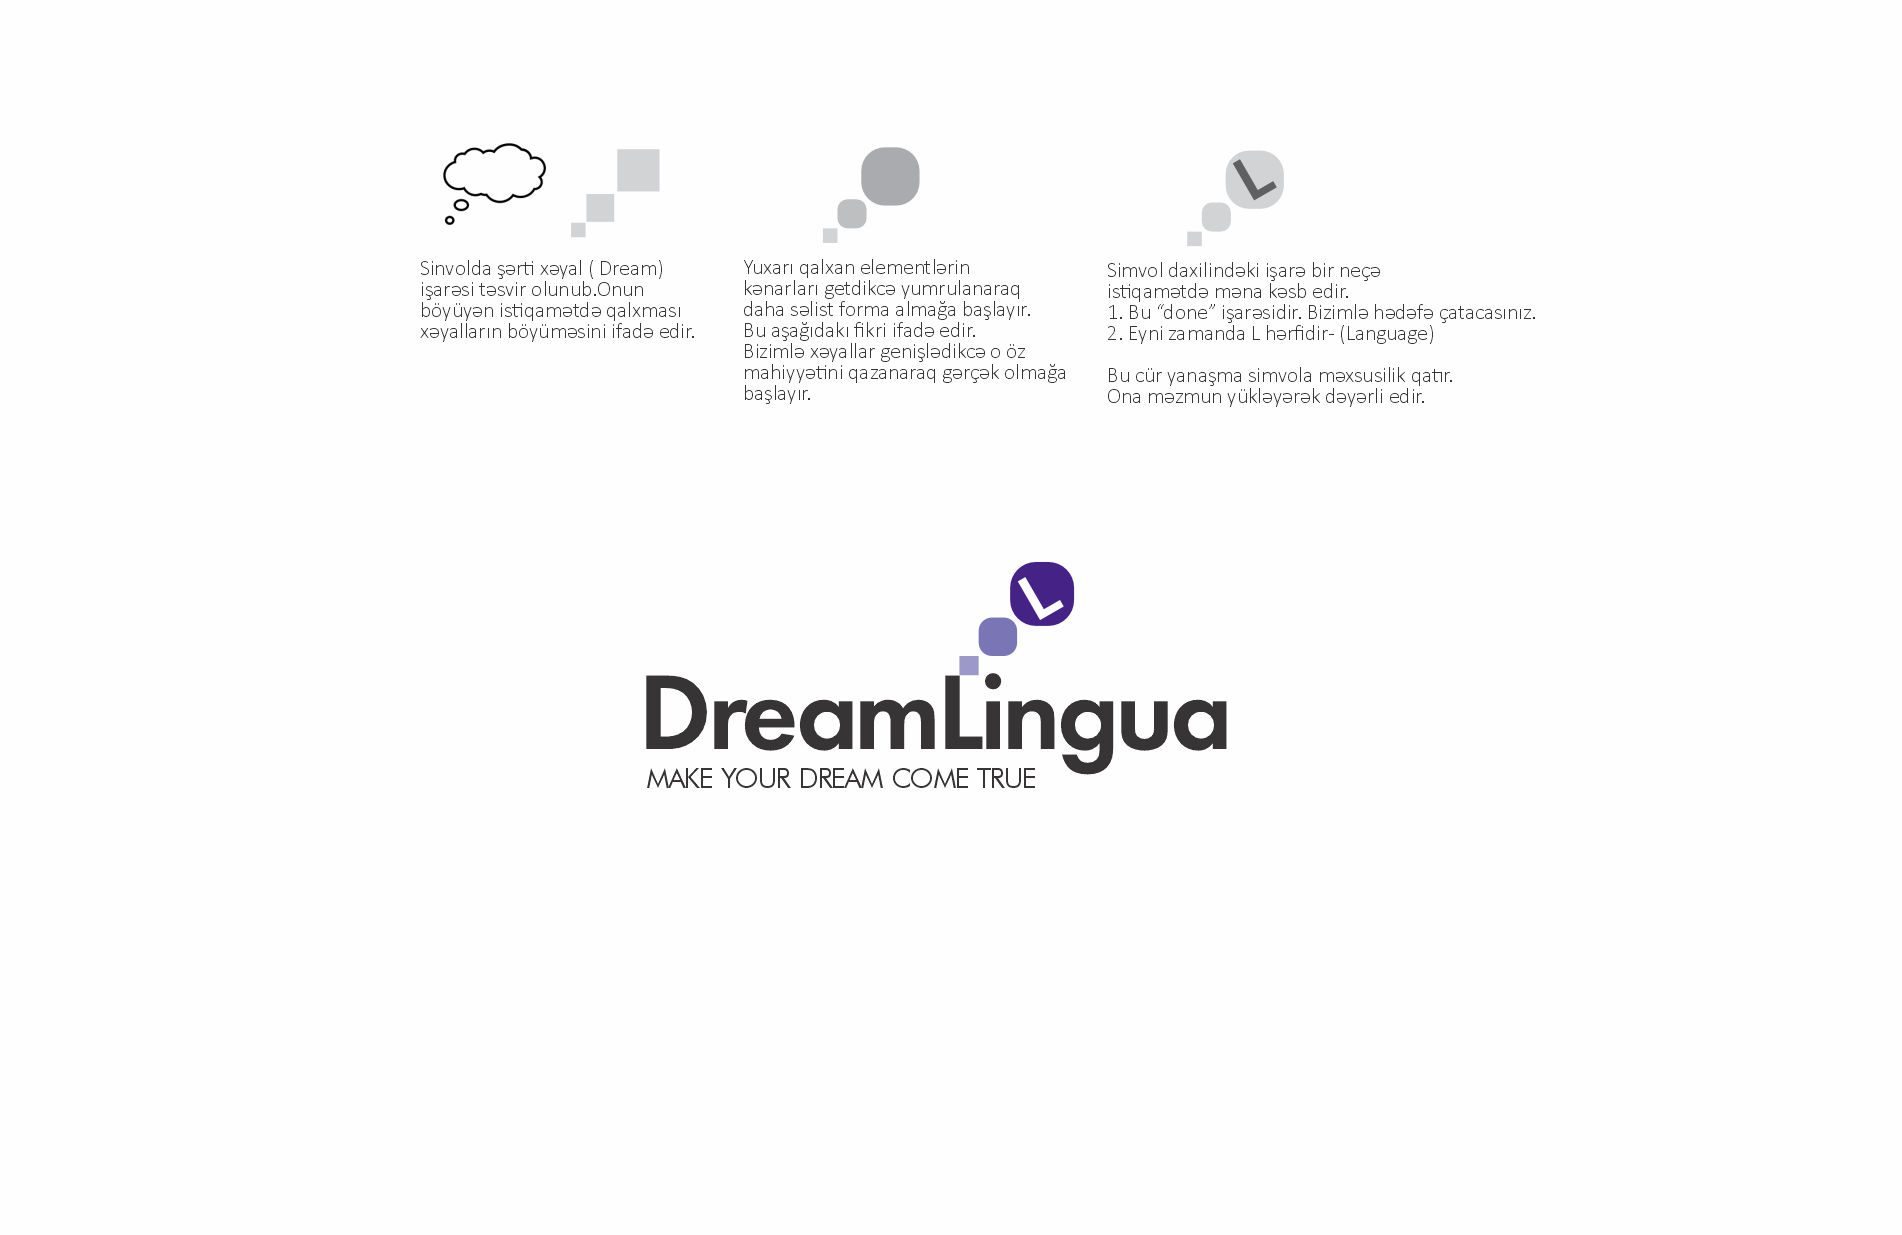 Dreamlingua